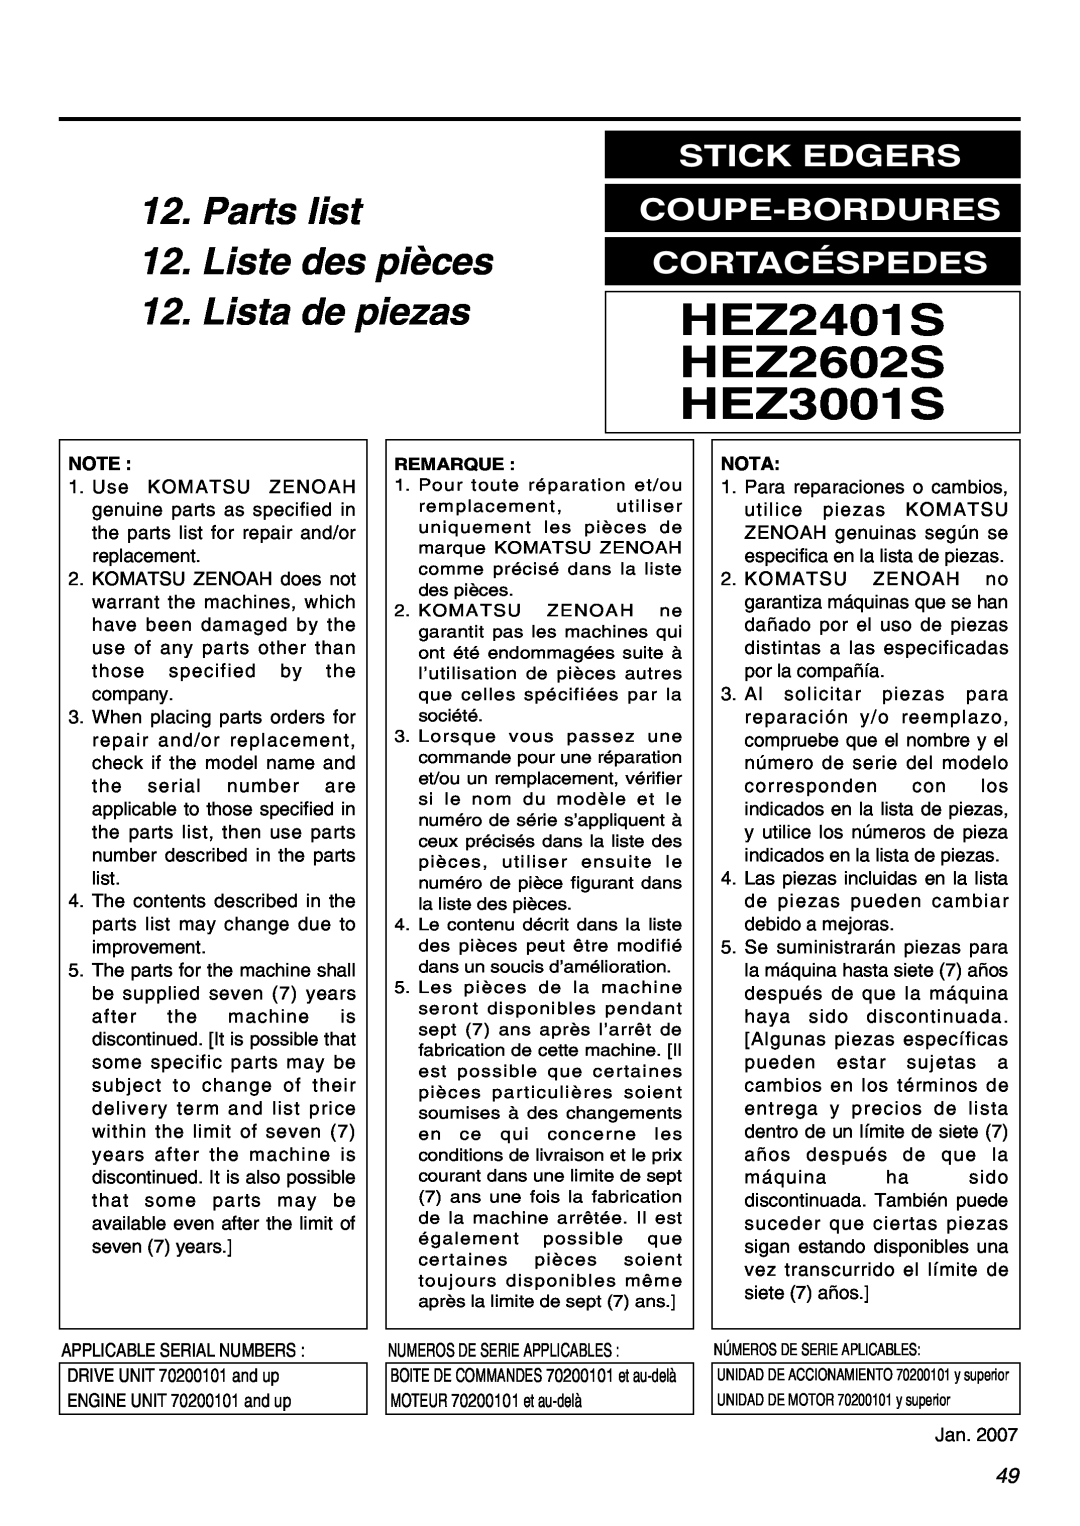 RedMax HEZ2602S, HEZ3001S Parts list 12. Liste des pièces 12. Lista de piezas, Stick Edgers Coupe-Bordures Cortacéspedes 